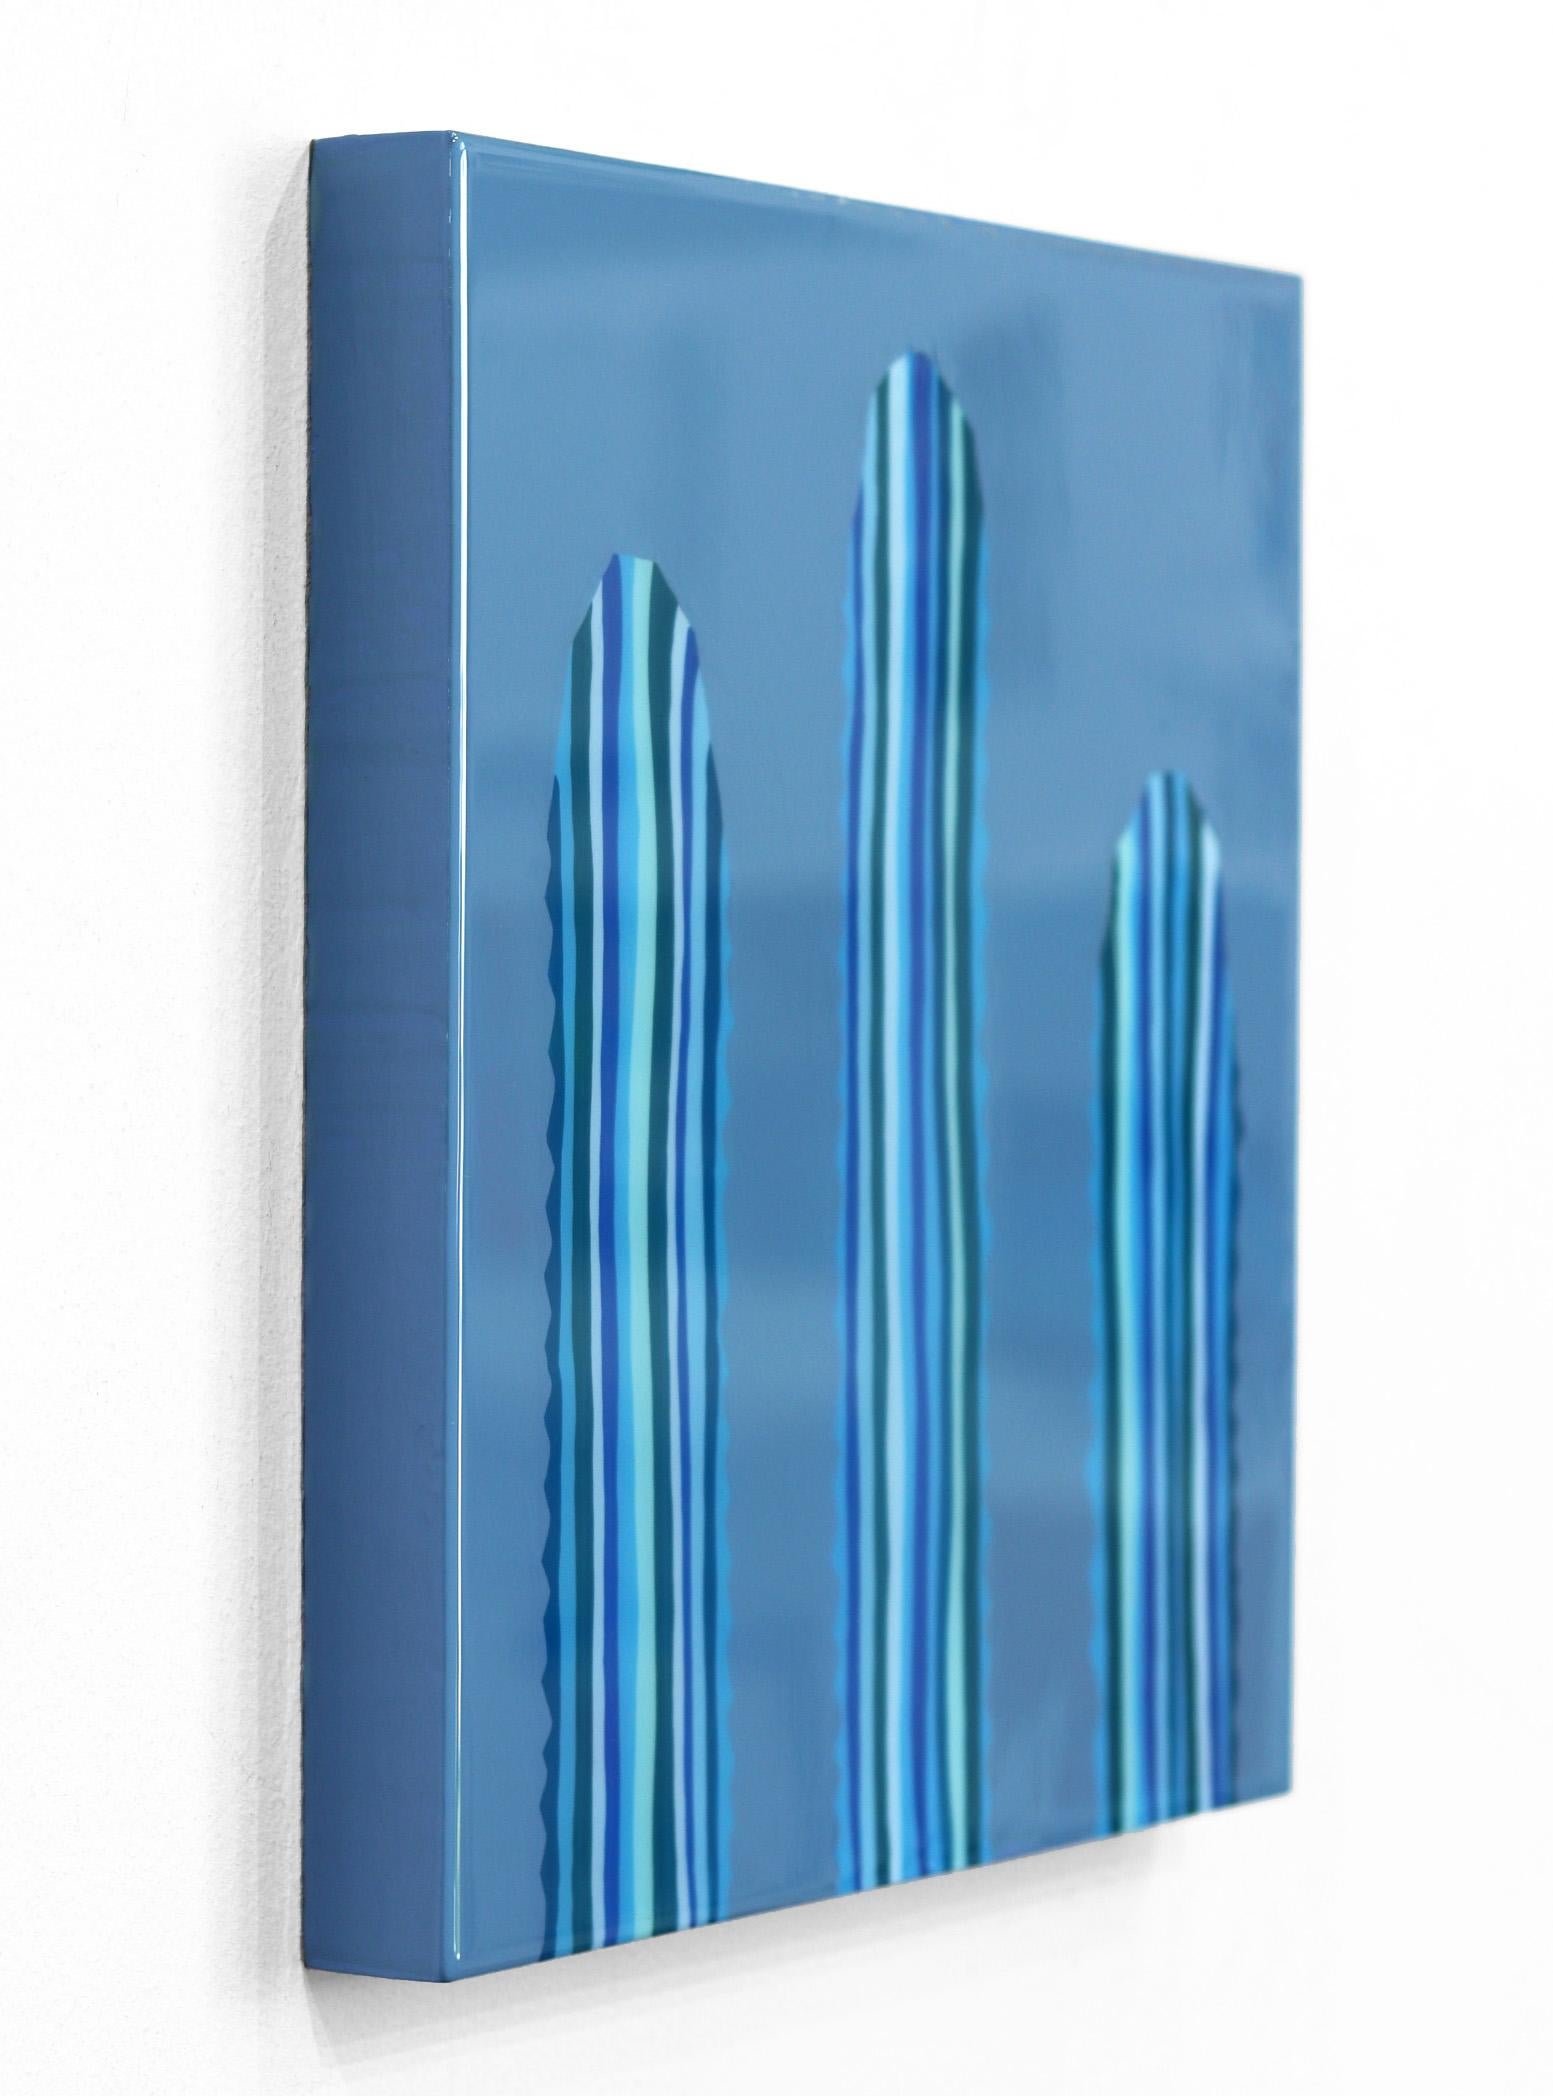 Saphir - Peinture de cactus d'inspiration Pop Art d'inspiration sud-ouest - Bleu Landscape Painting par Will Beger